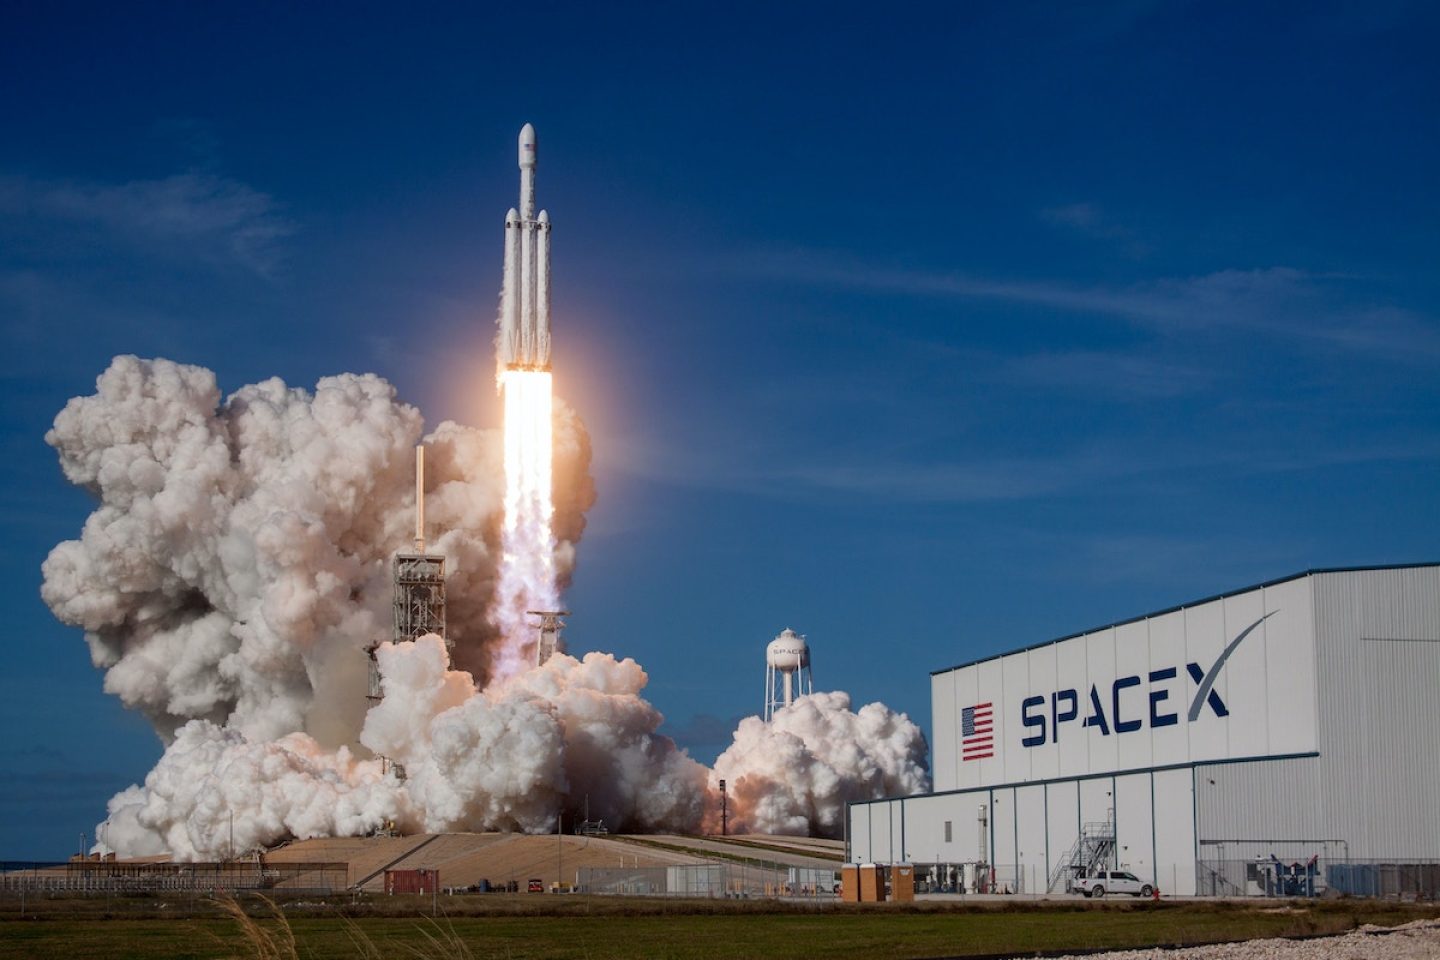 Rechtswidrig: SpaceX entließ Mitarbeitende zu Unrecht nach Musk-Kritik